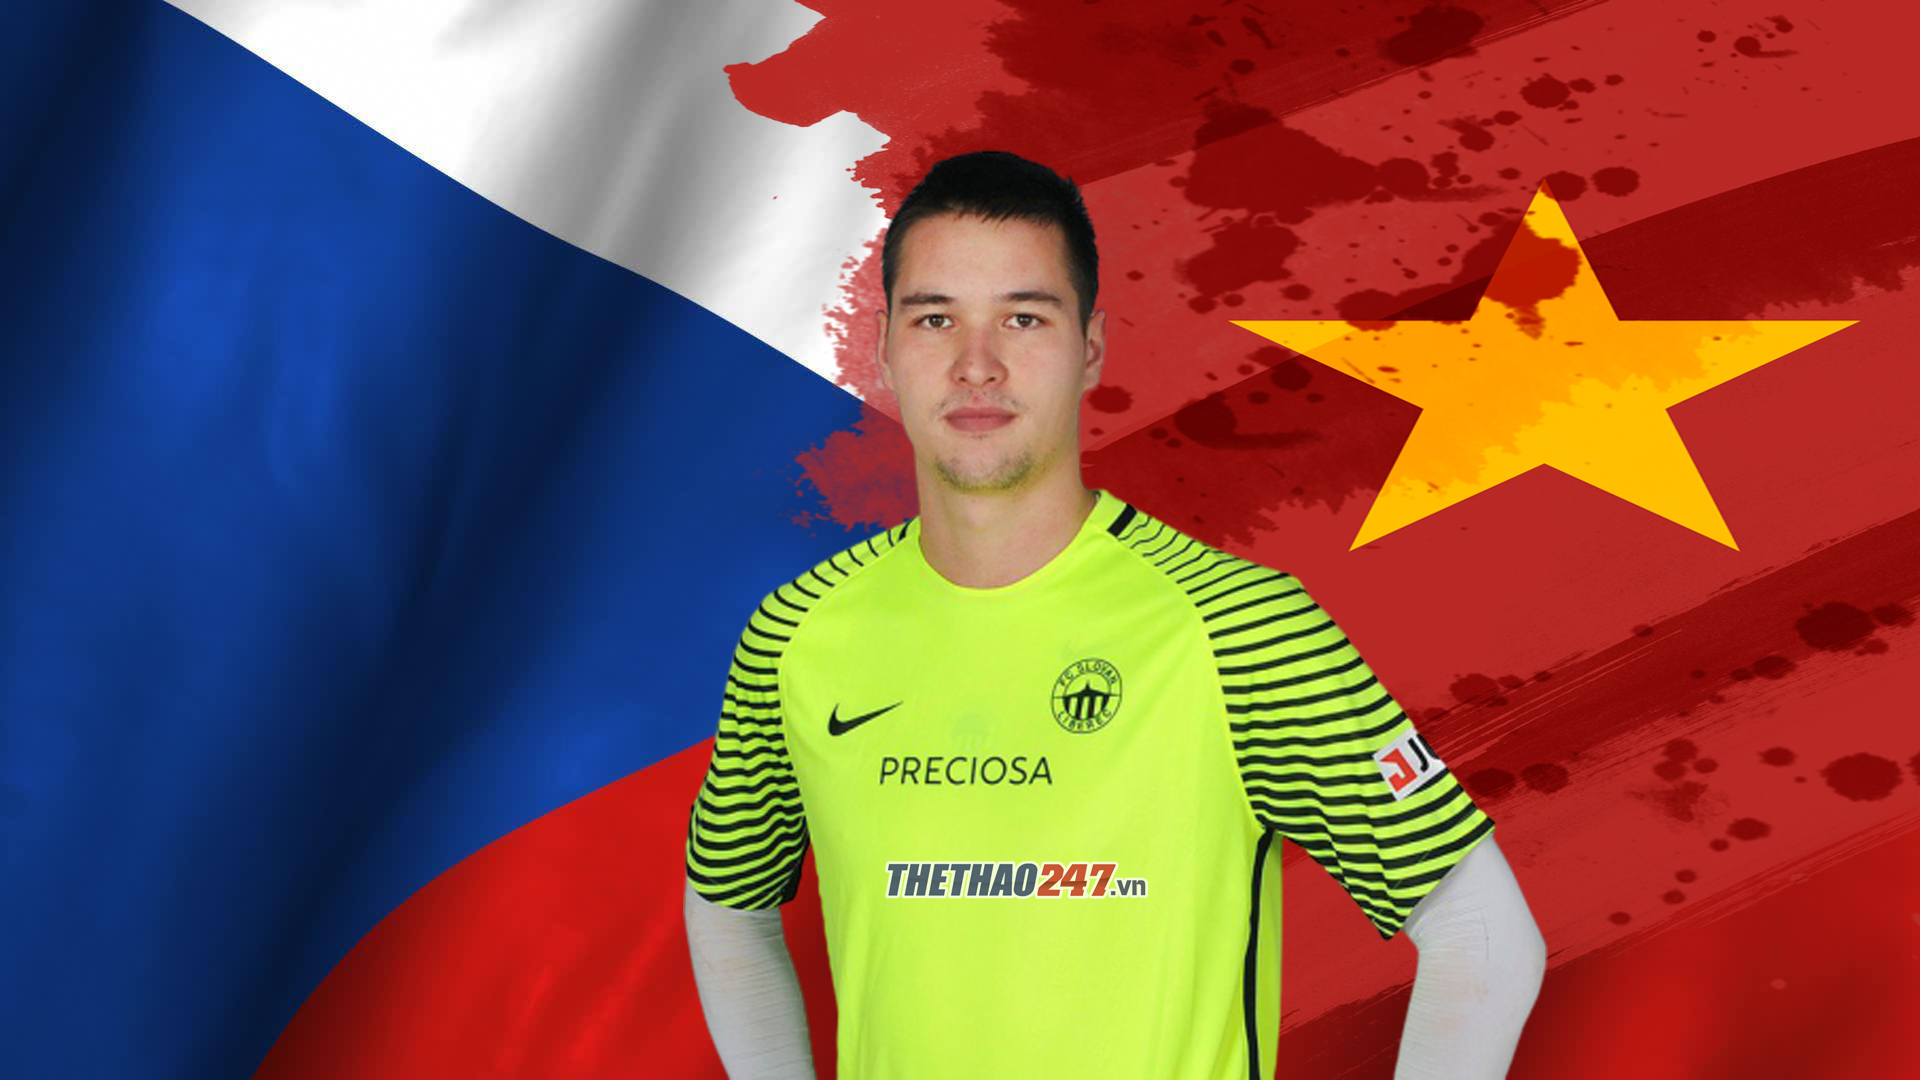 Filip Nguyễn và mong muốn khoác lên mình màu áo đội tuyển Việt Nam